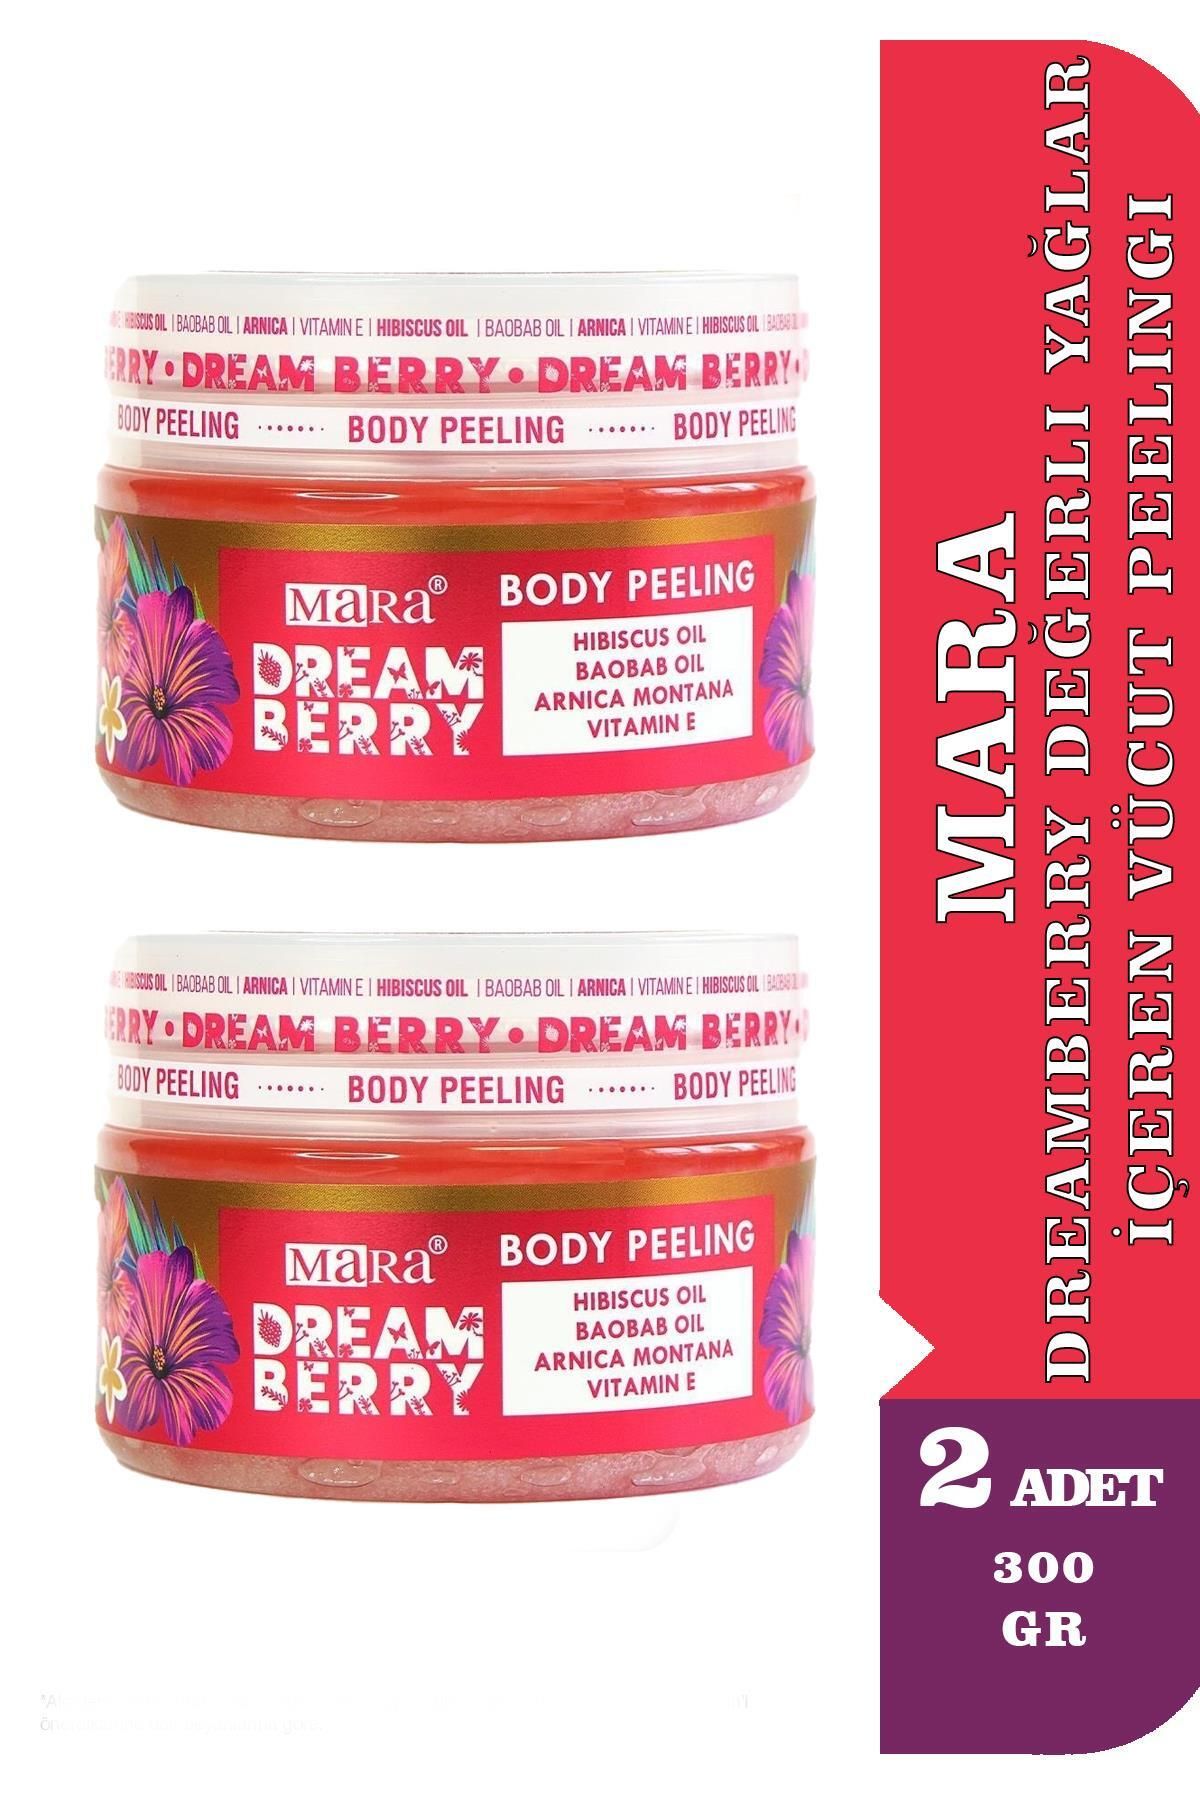 Mara Dreamberry Değerli Yağlar Içeren Çilek Vücut Peelingi 300 gr 2 Adet